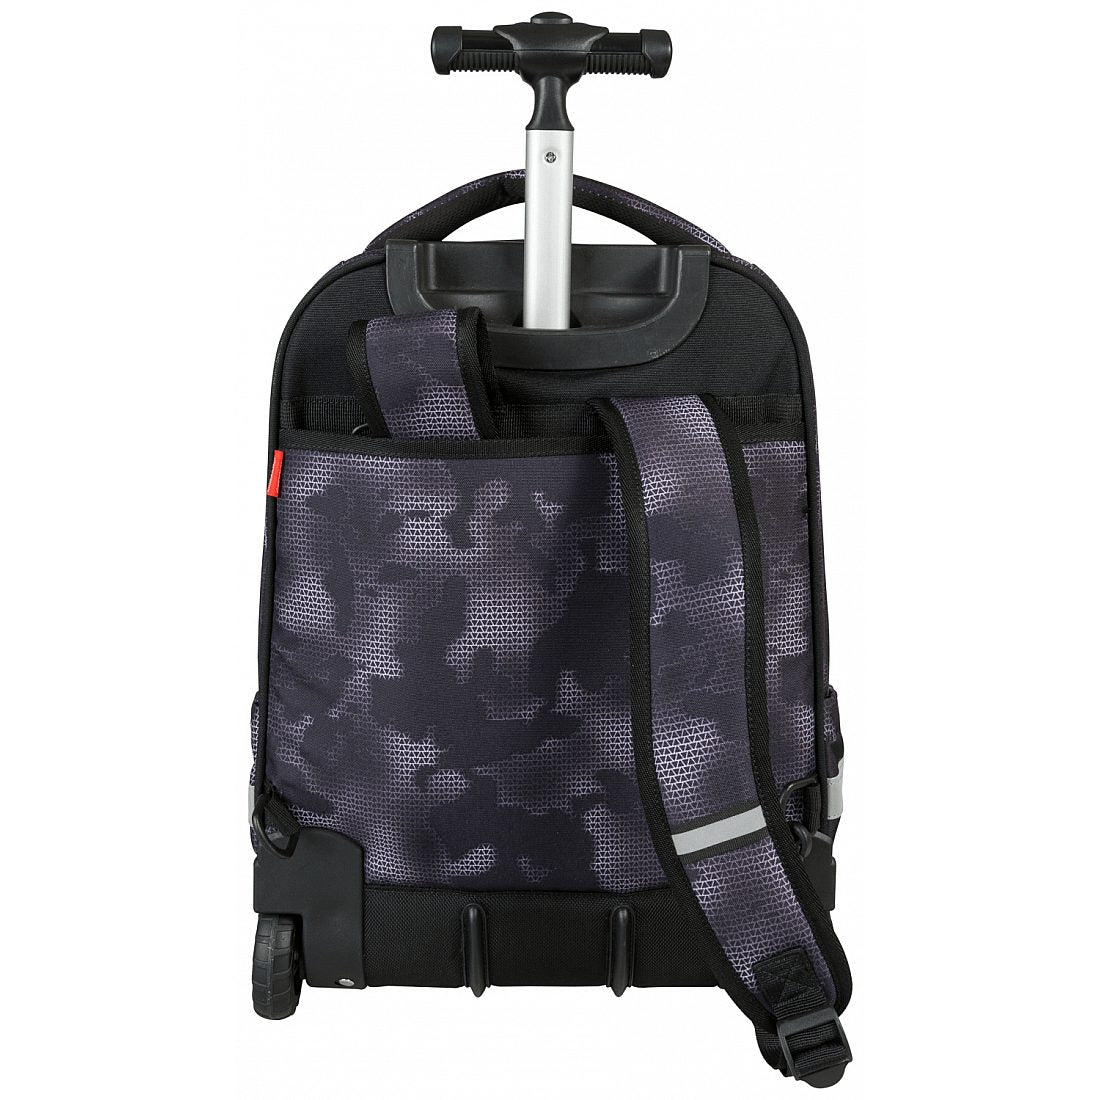 Backpack Large 3 Zip Trolley Bag Mimetic Black